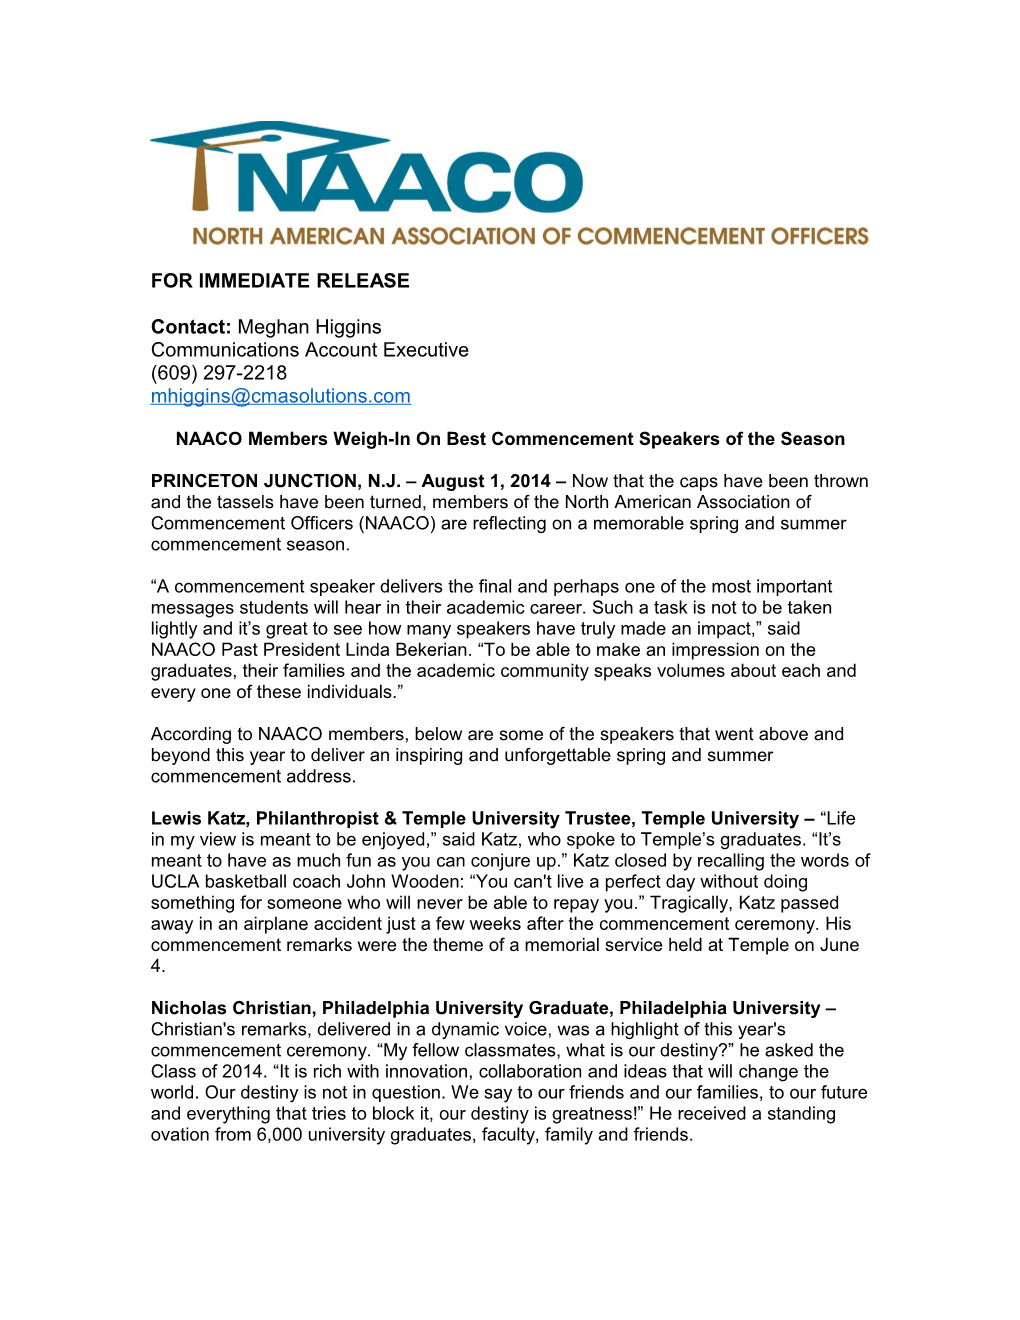 NAACO Members Have Spoken